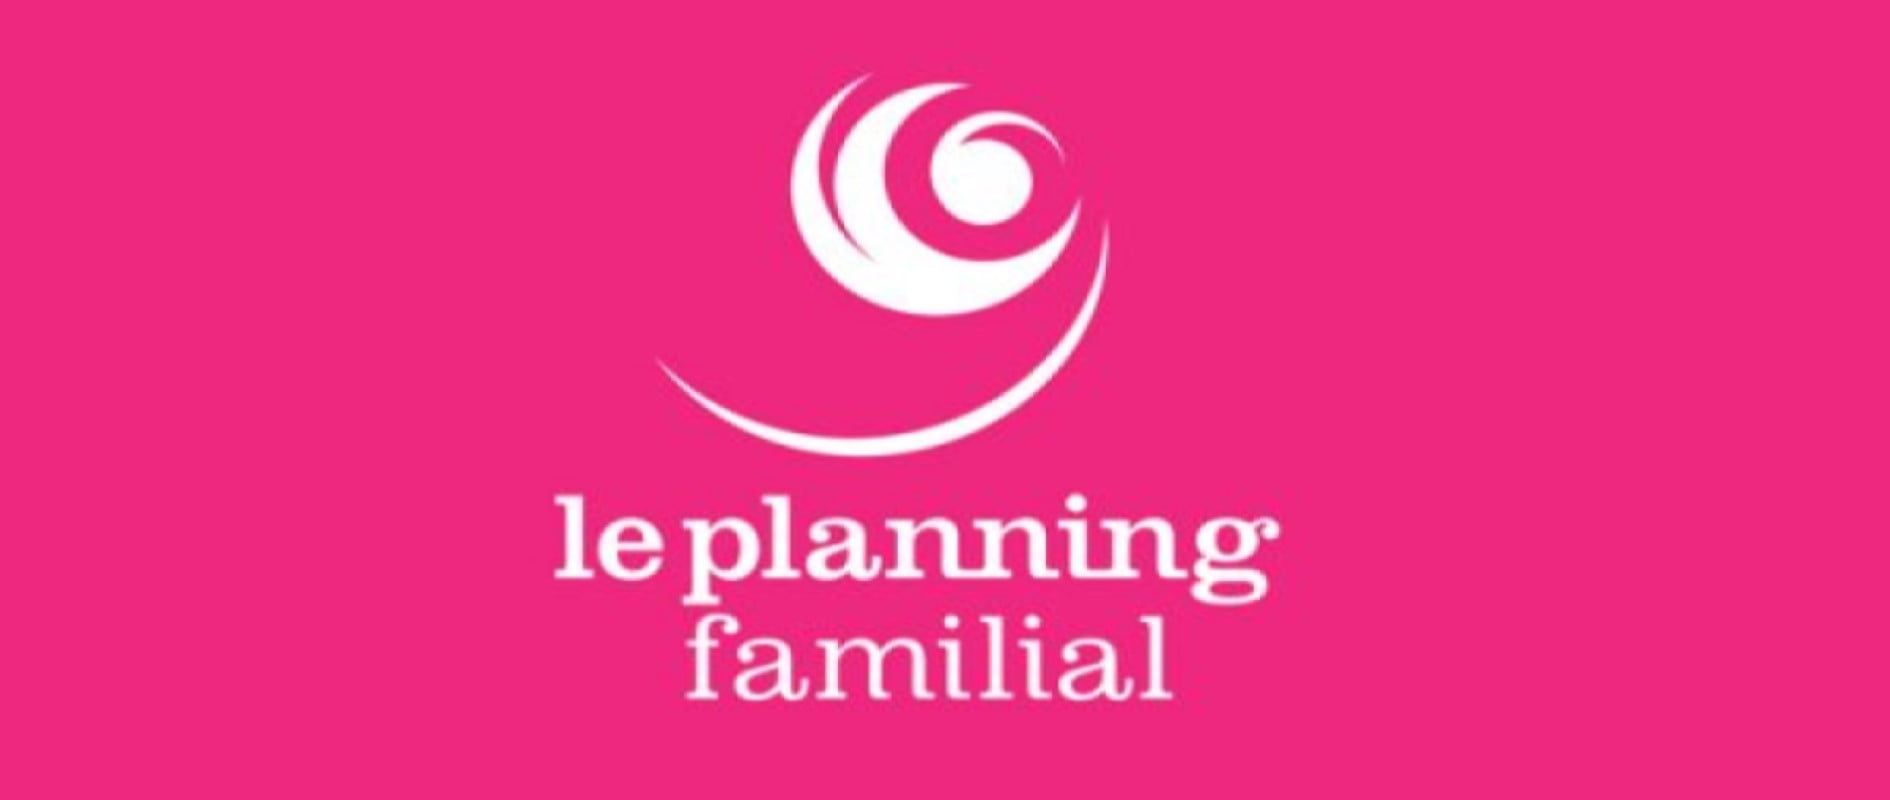 Le Planning familial